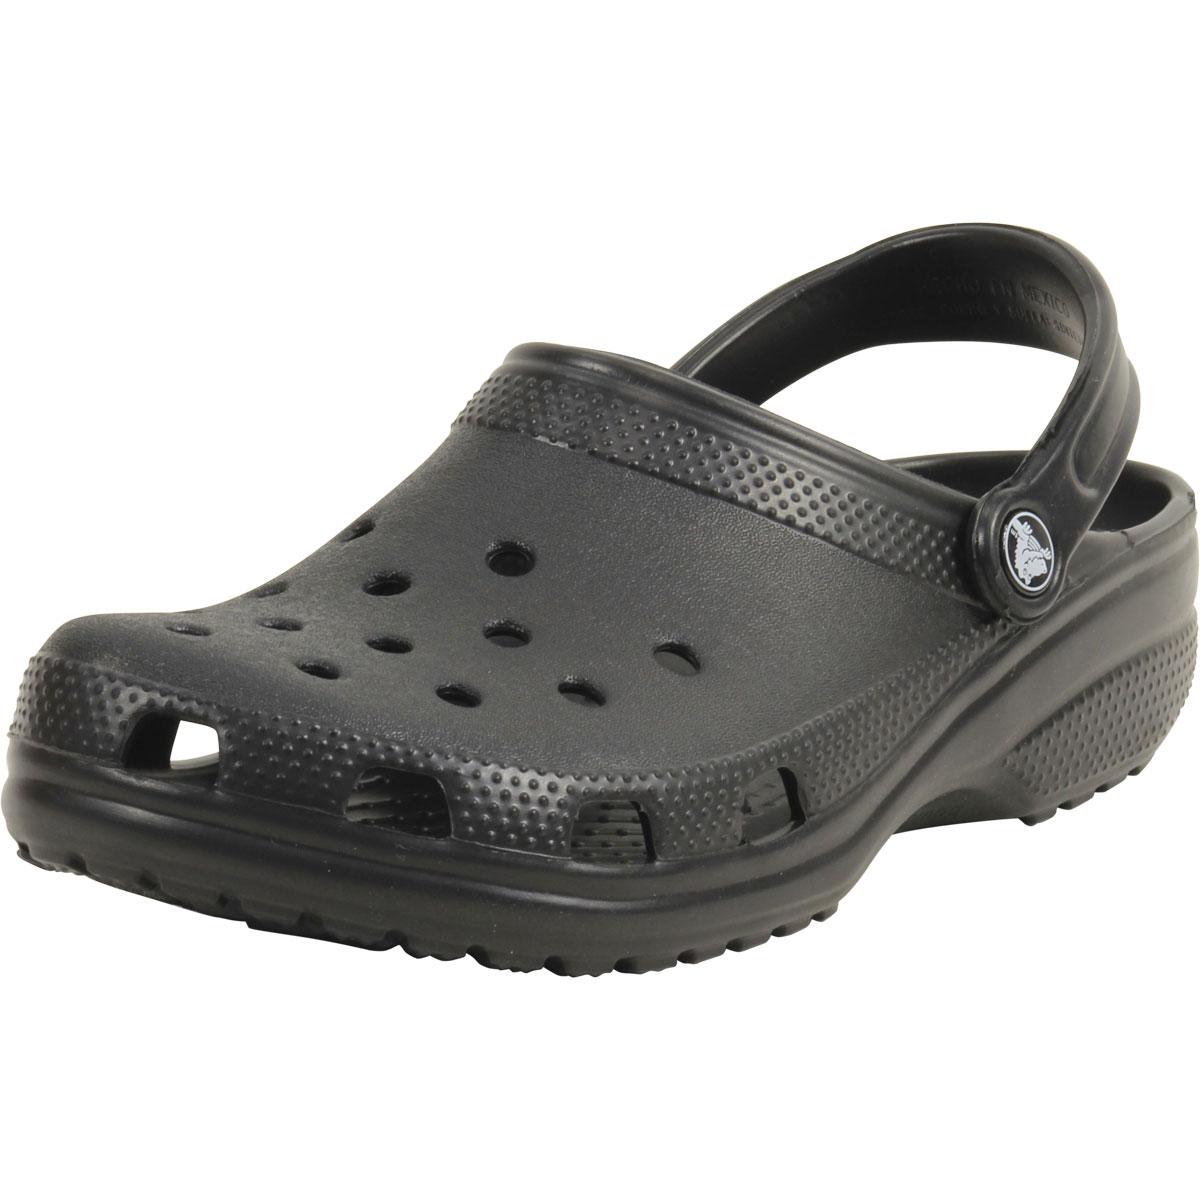 Crocs Men's Original Classic Clogs Sandals Shoes